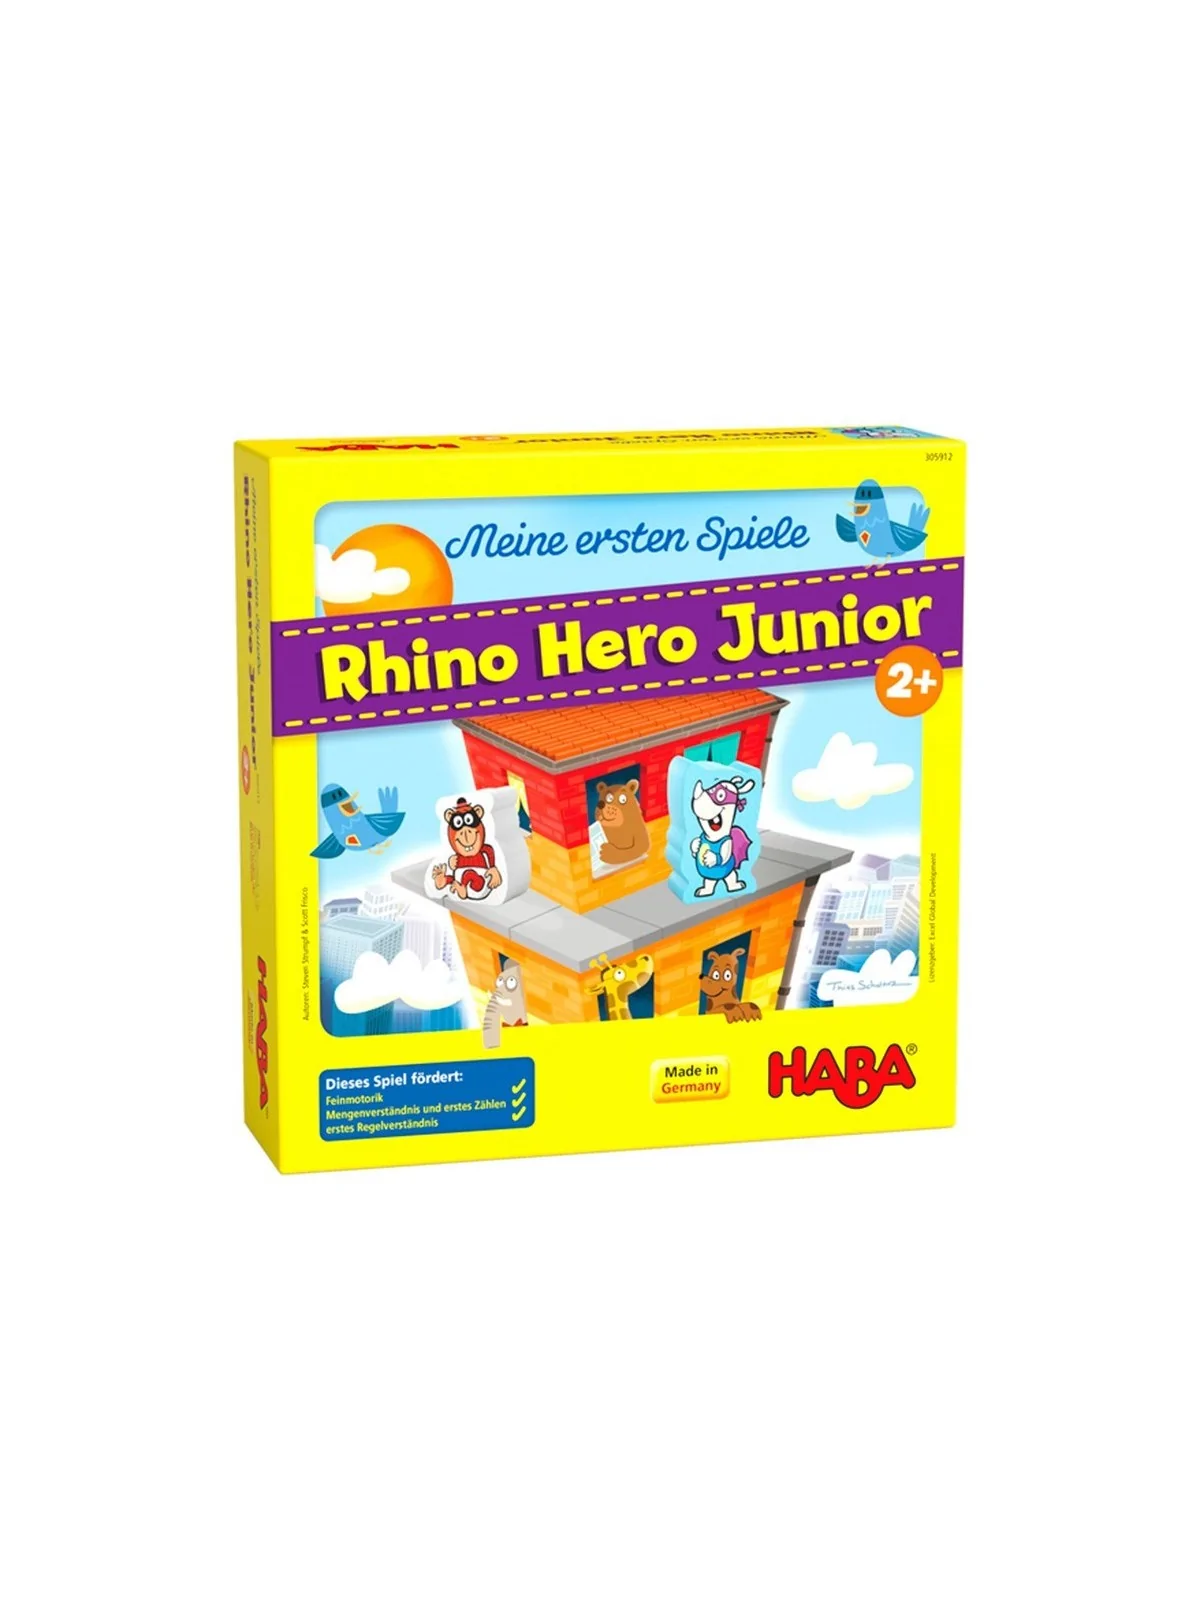 Comprar Rhino Hero Junior barato al mejor precio 20,11 € de Haba